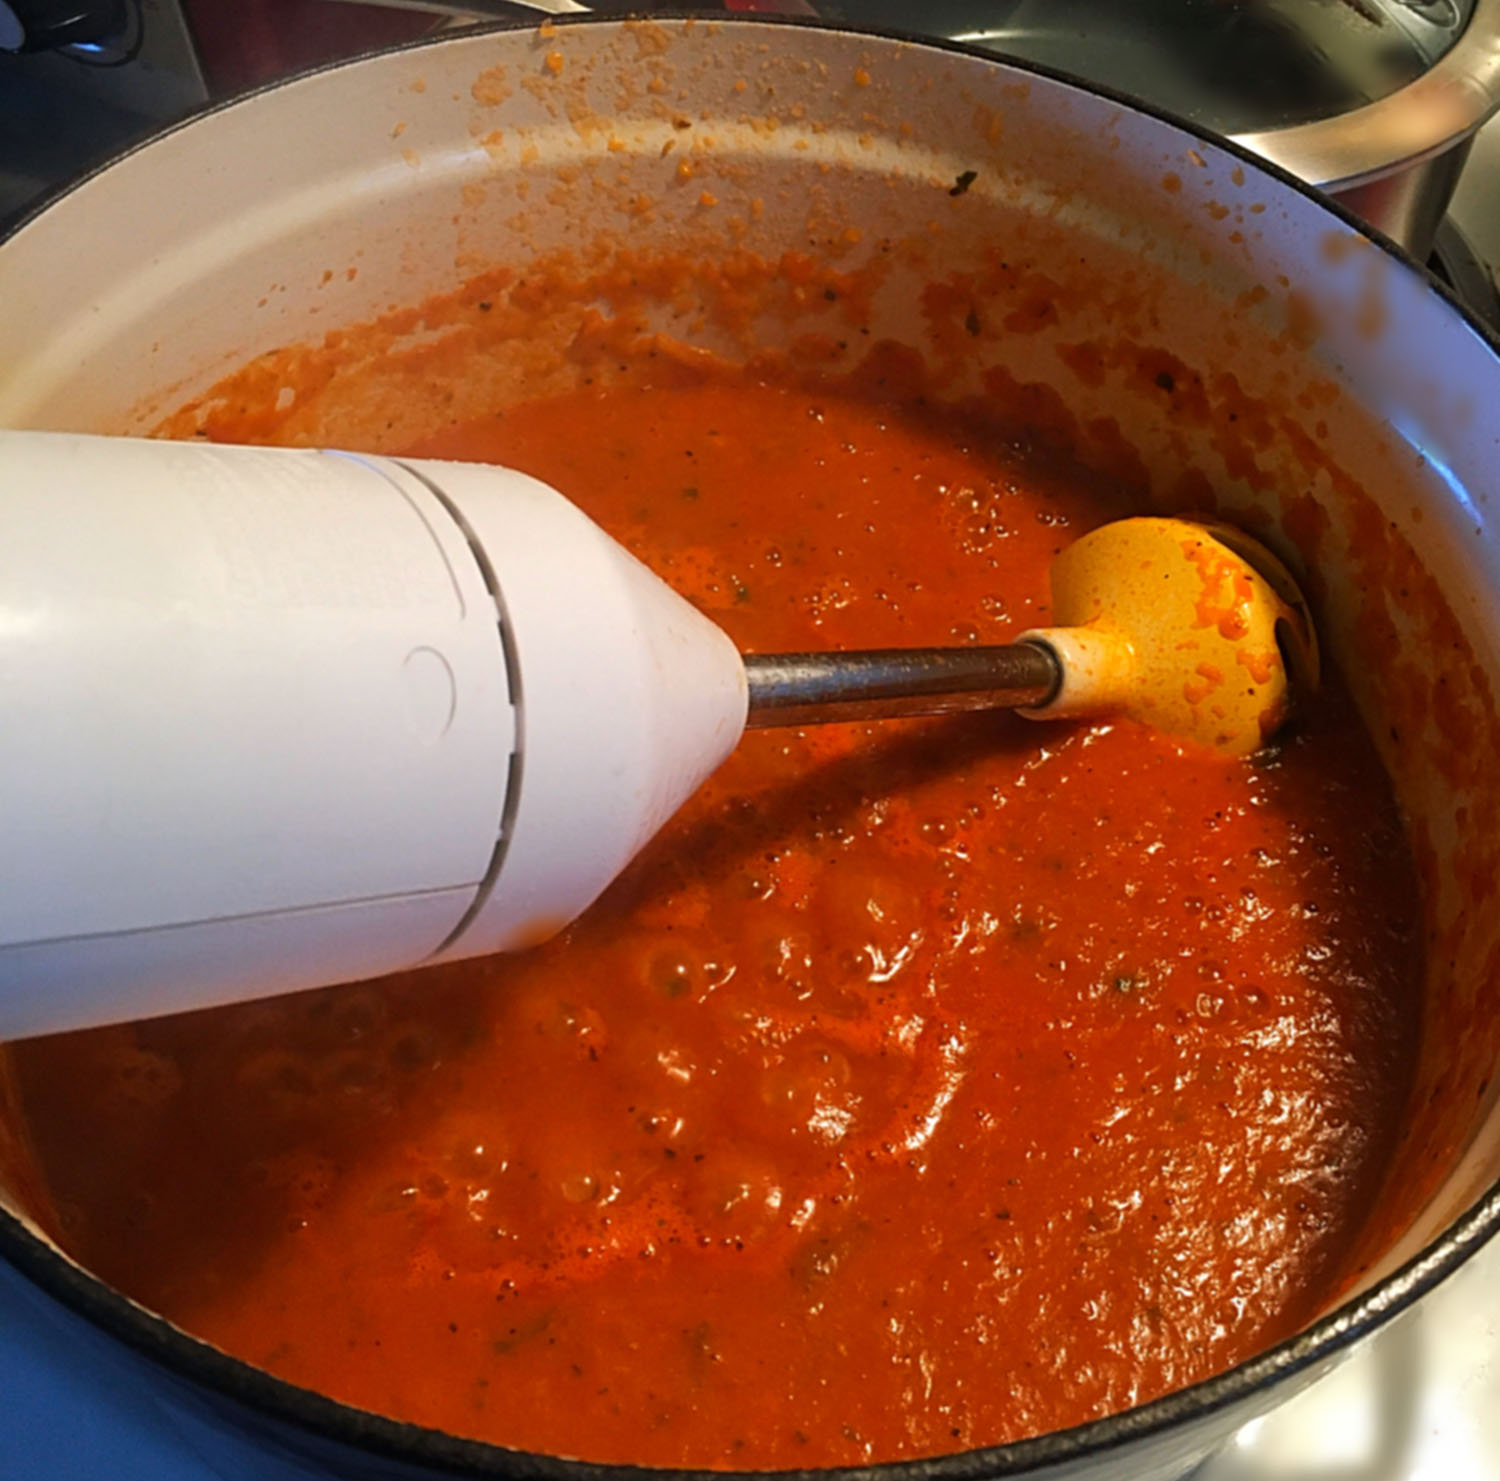 Tomato Blue Cheese Soup